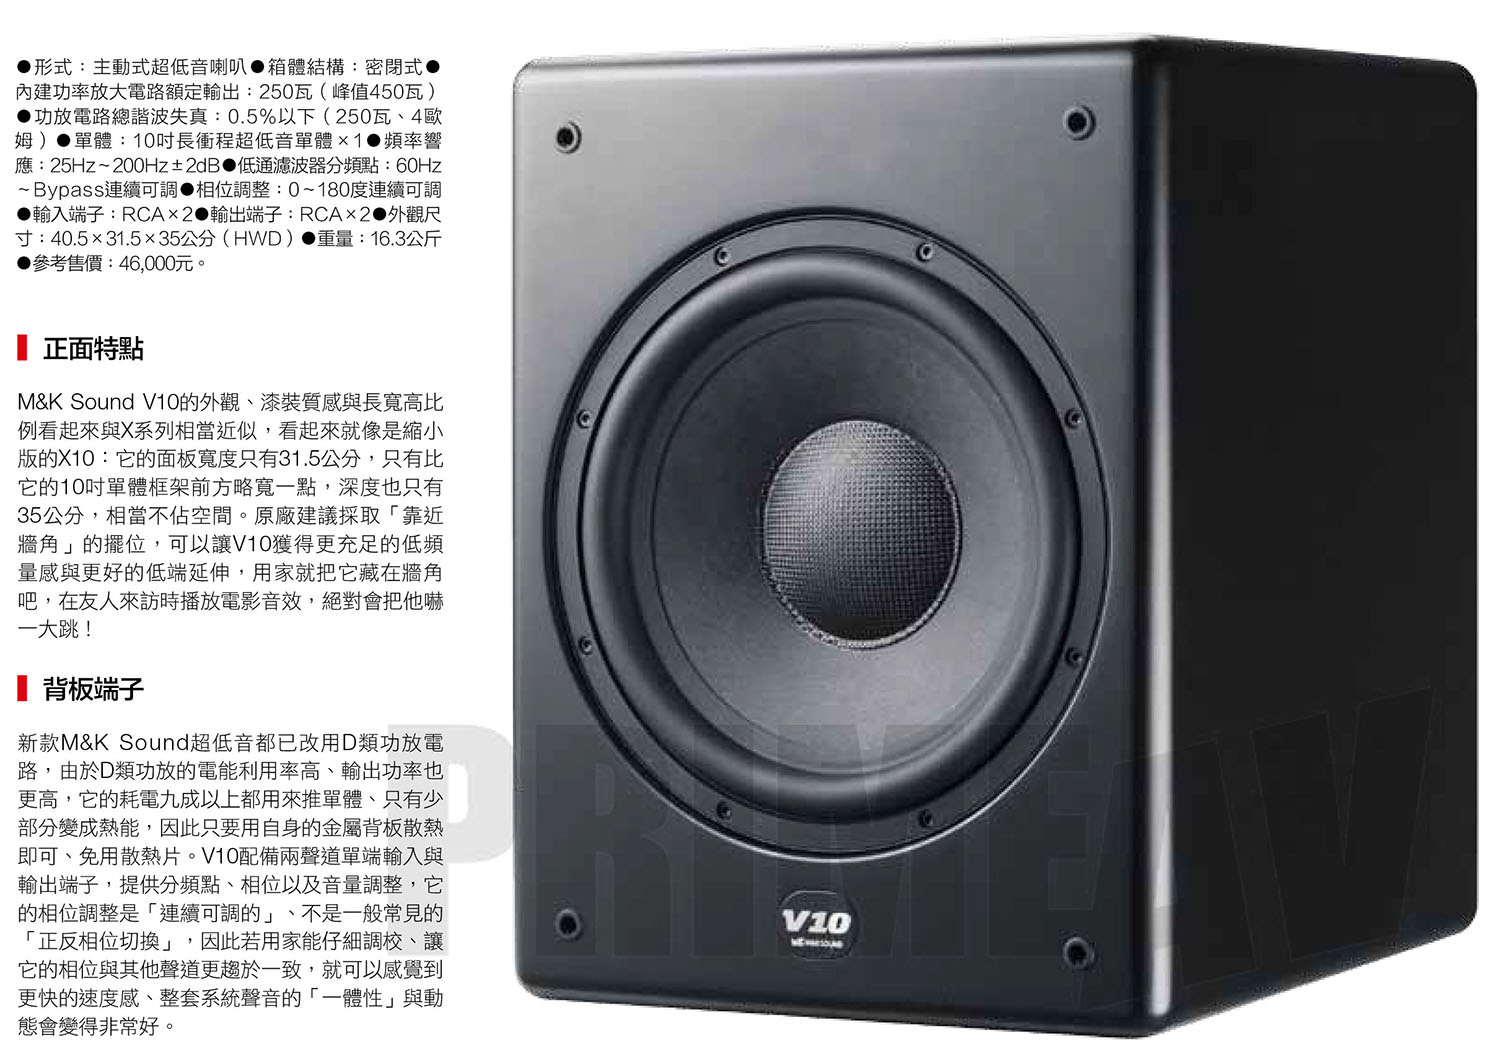 M&K Sound V10主動式超低音喇叭